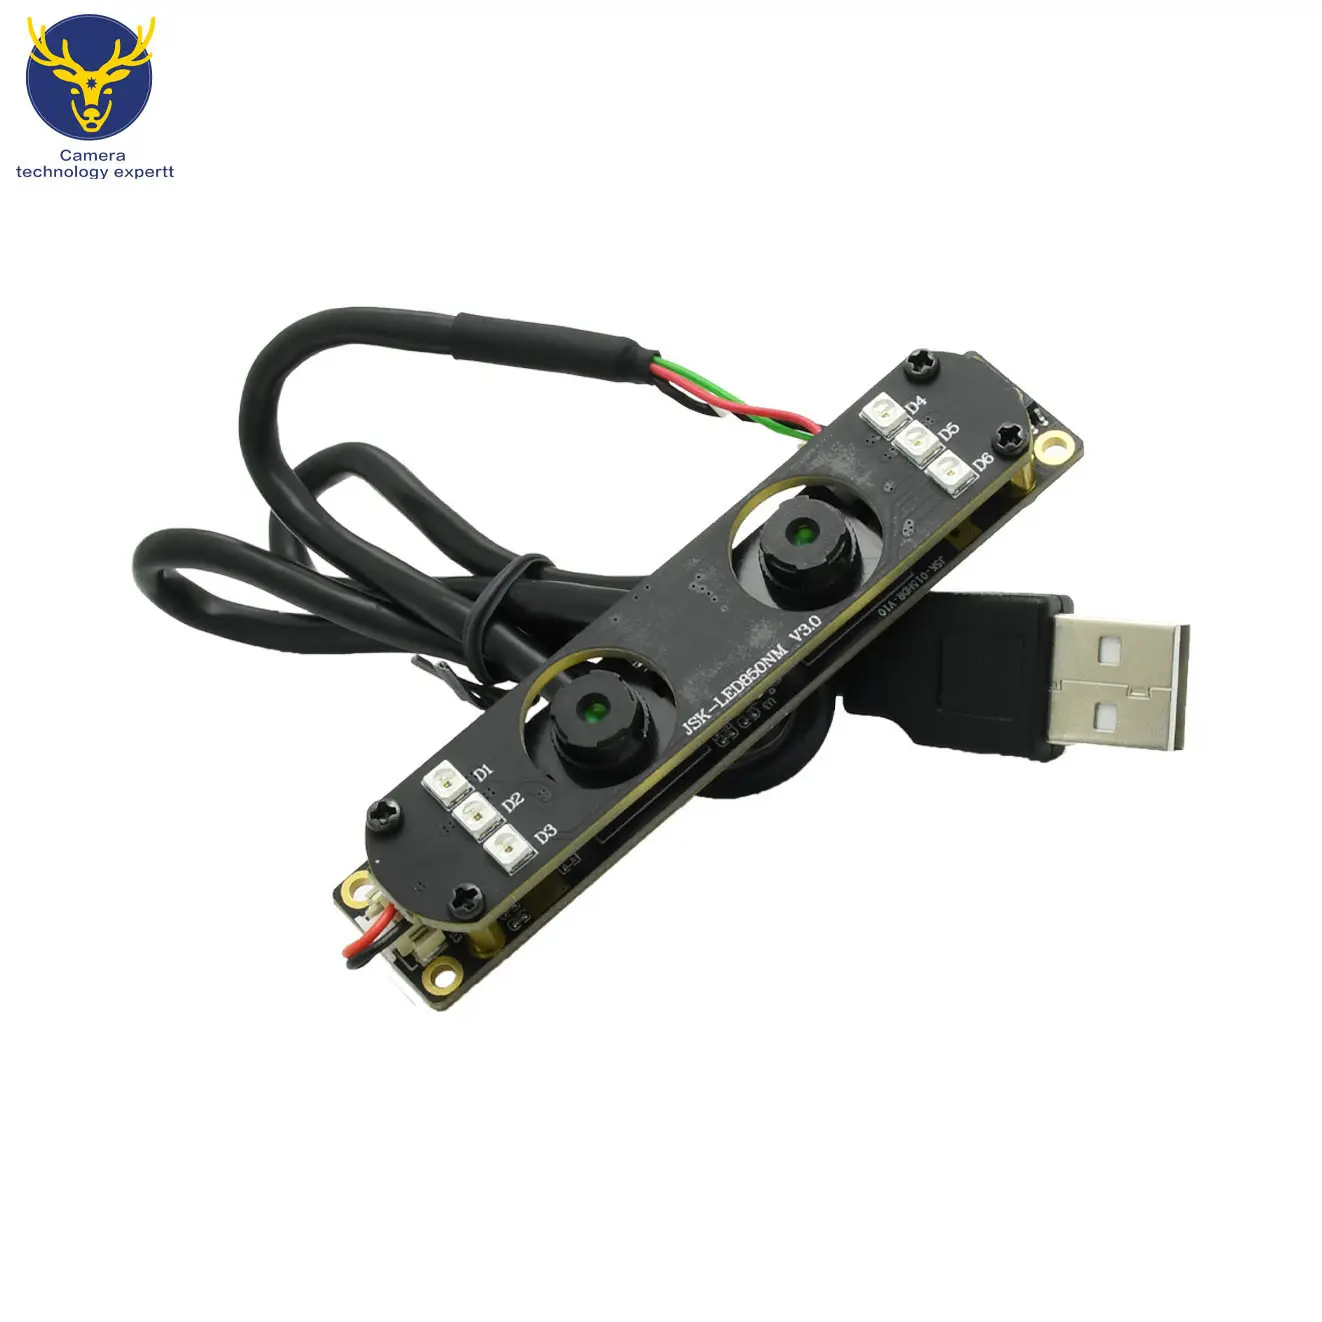 Fabrika sıcak satış CMOS sensörü 2MP OV2640 kamera modülü Mini 60fps MT9V024 kızılötesi USB mikroskop güvenlik kamerası modülü